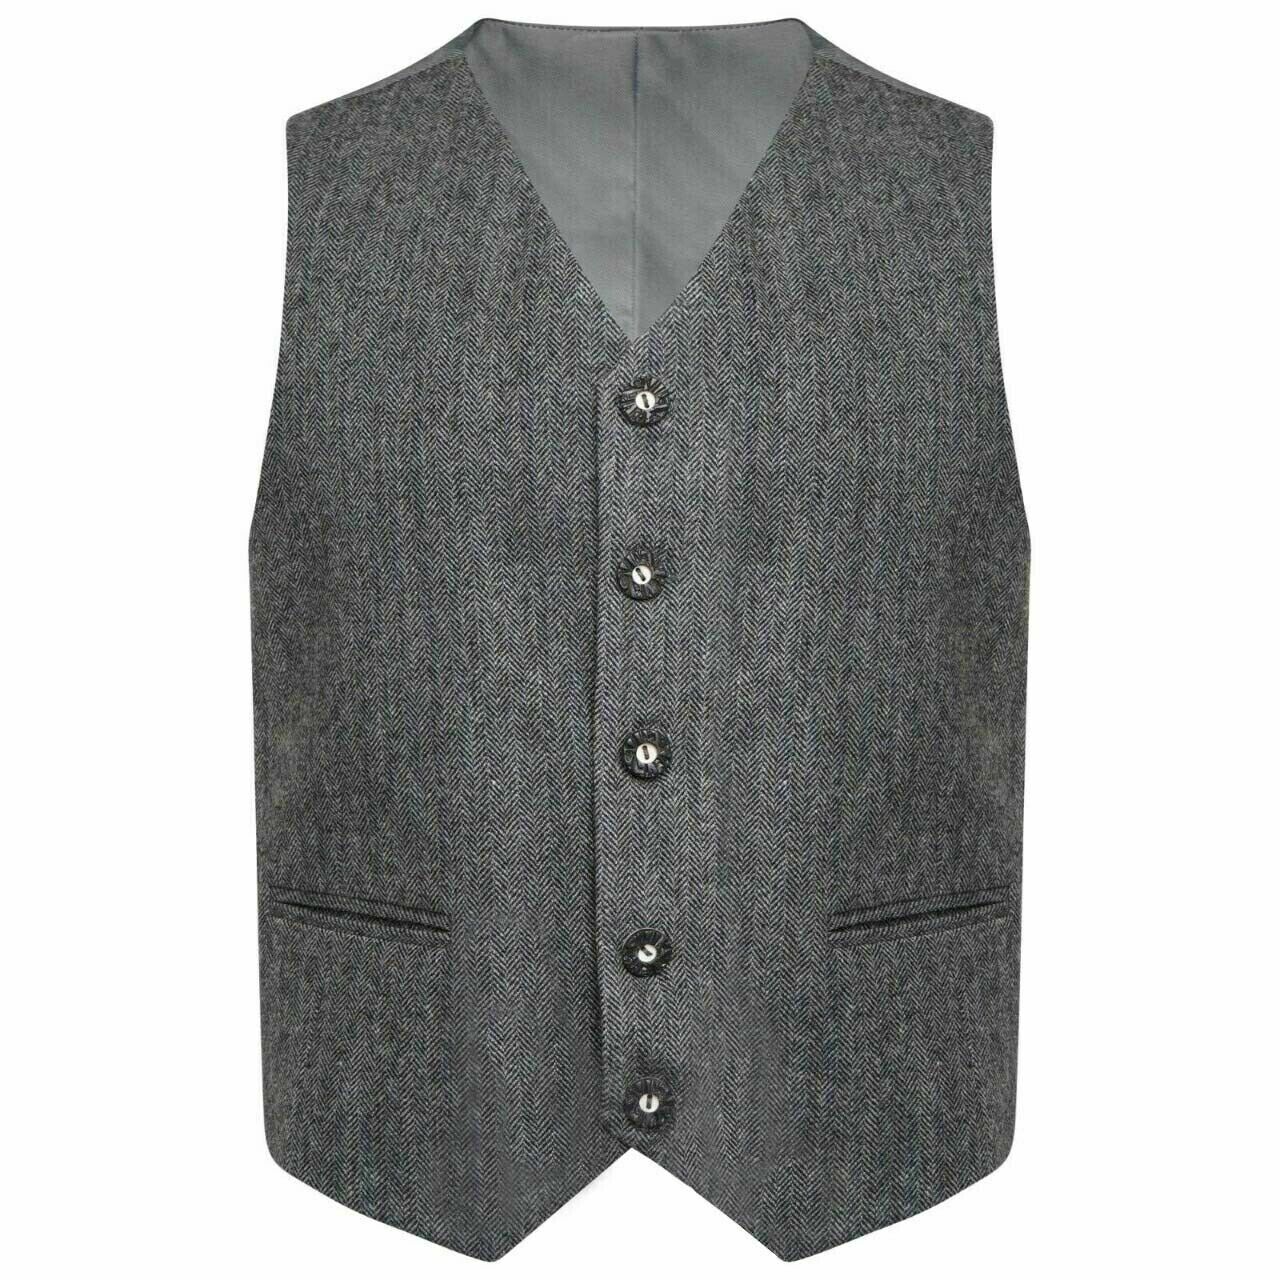 Tweed Crail Highland Kilt Jacket and Waistcoat Grey Scottish Wedding Dress